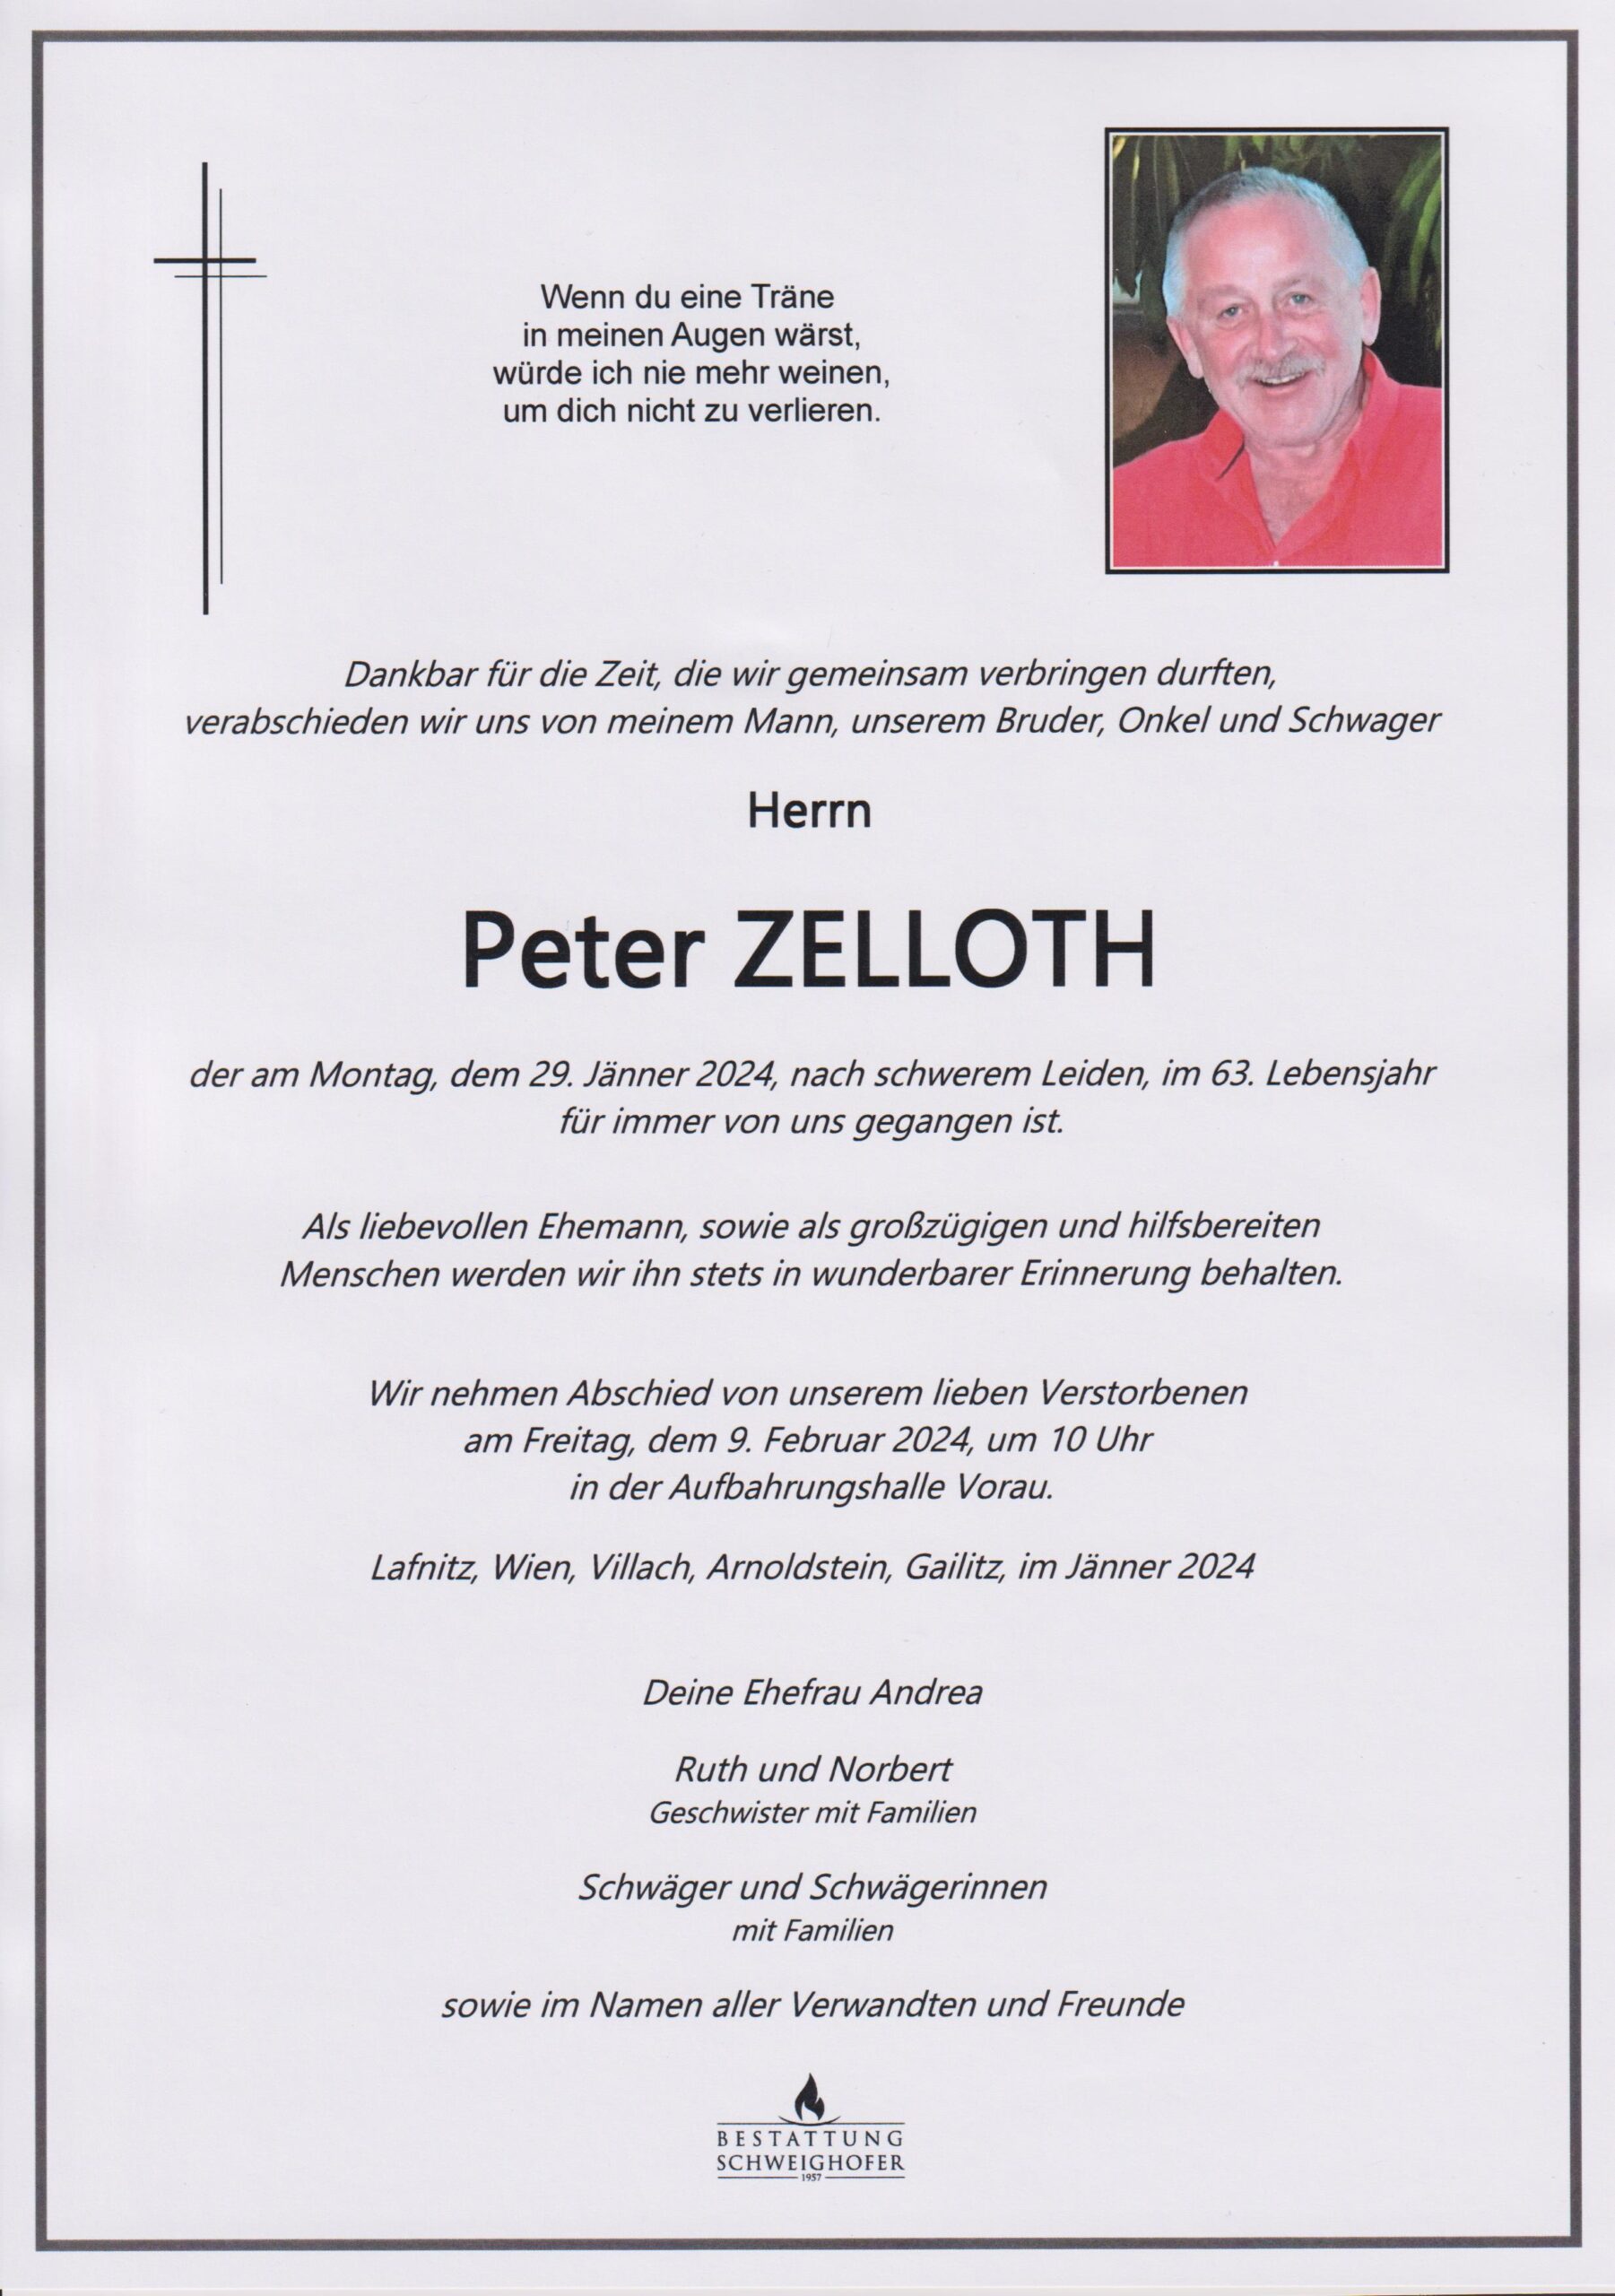 Peter Zelloth